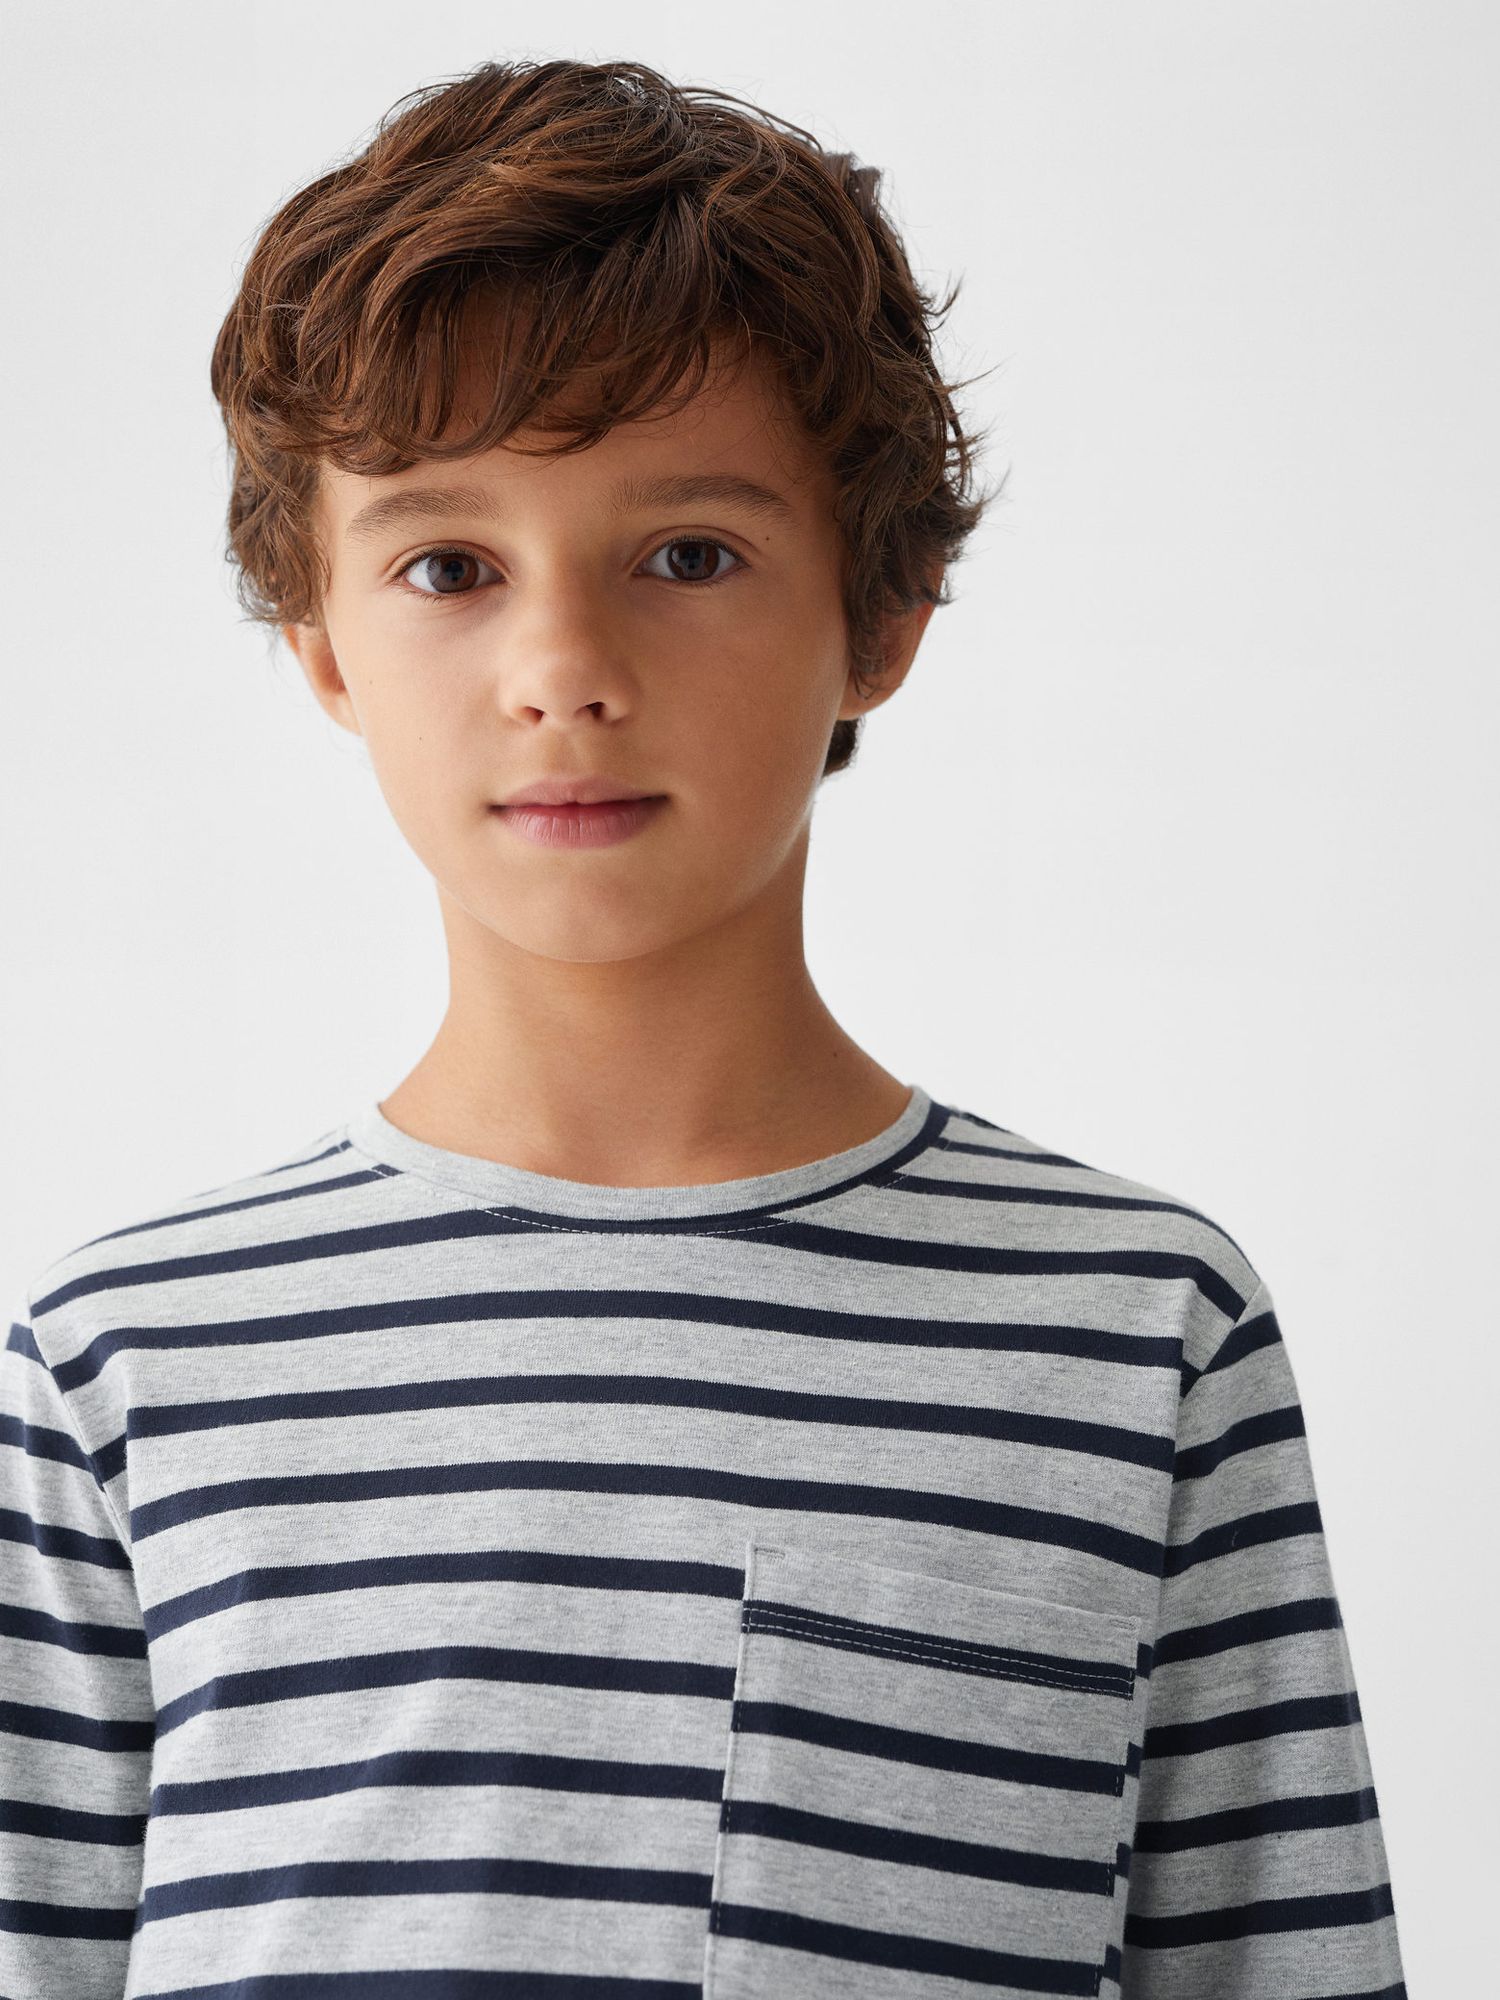 Mango Kids' Stripe Long Sleeve Pyjamas, Navy at John Lewis & Partners